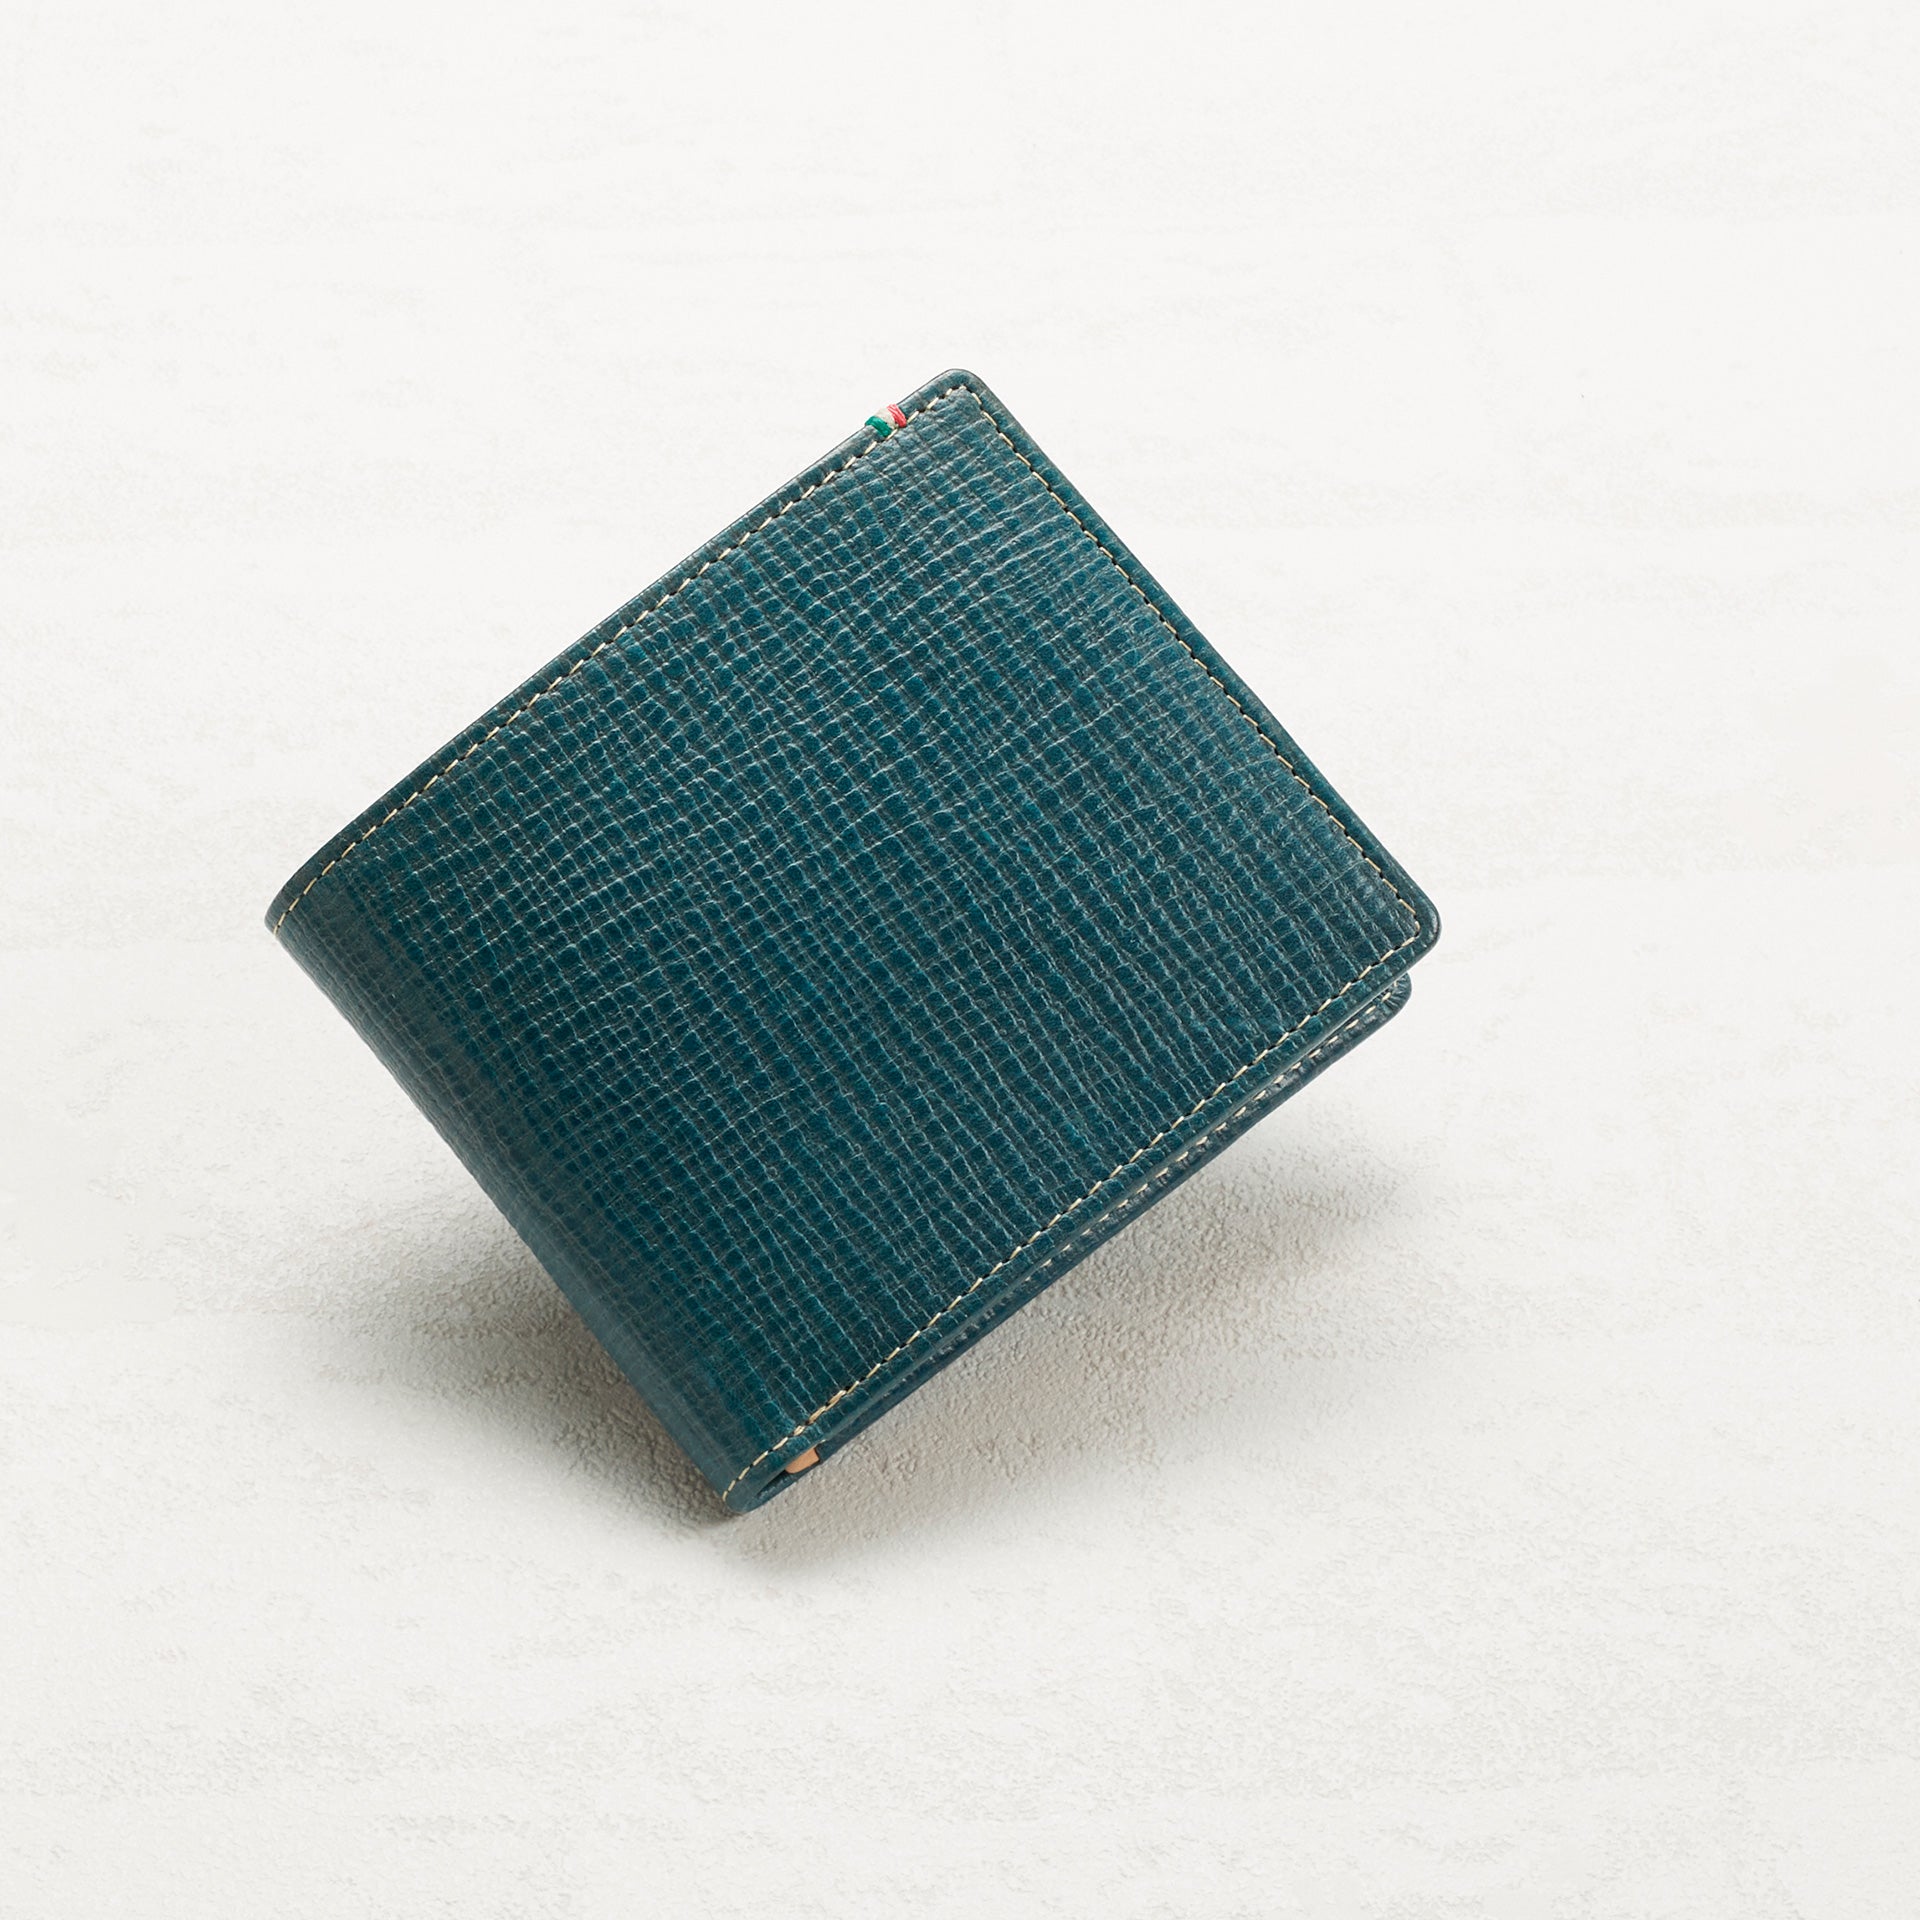 革財布・革小物の製造通販 アトリエ・ヒロ 公式オンラインショップ